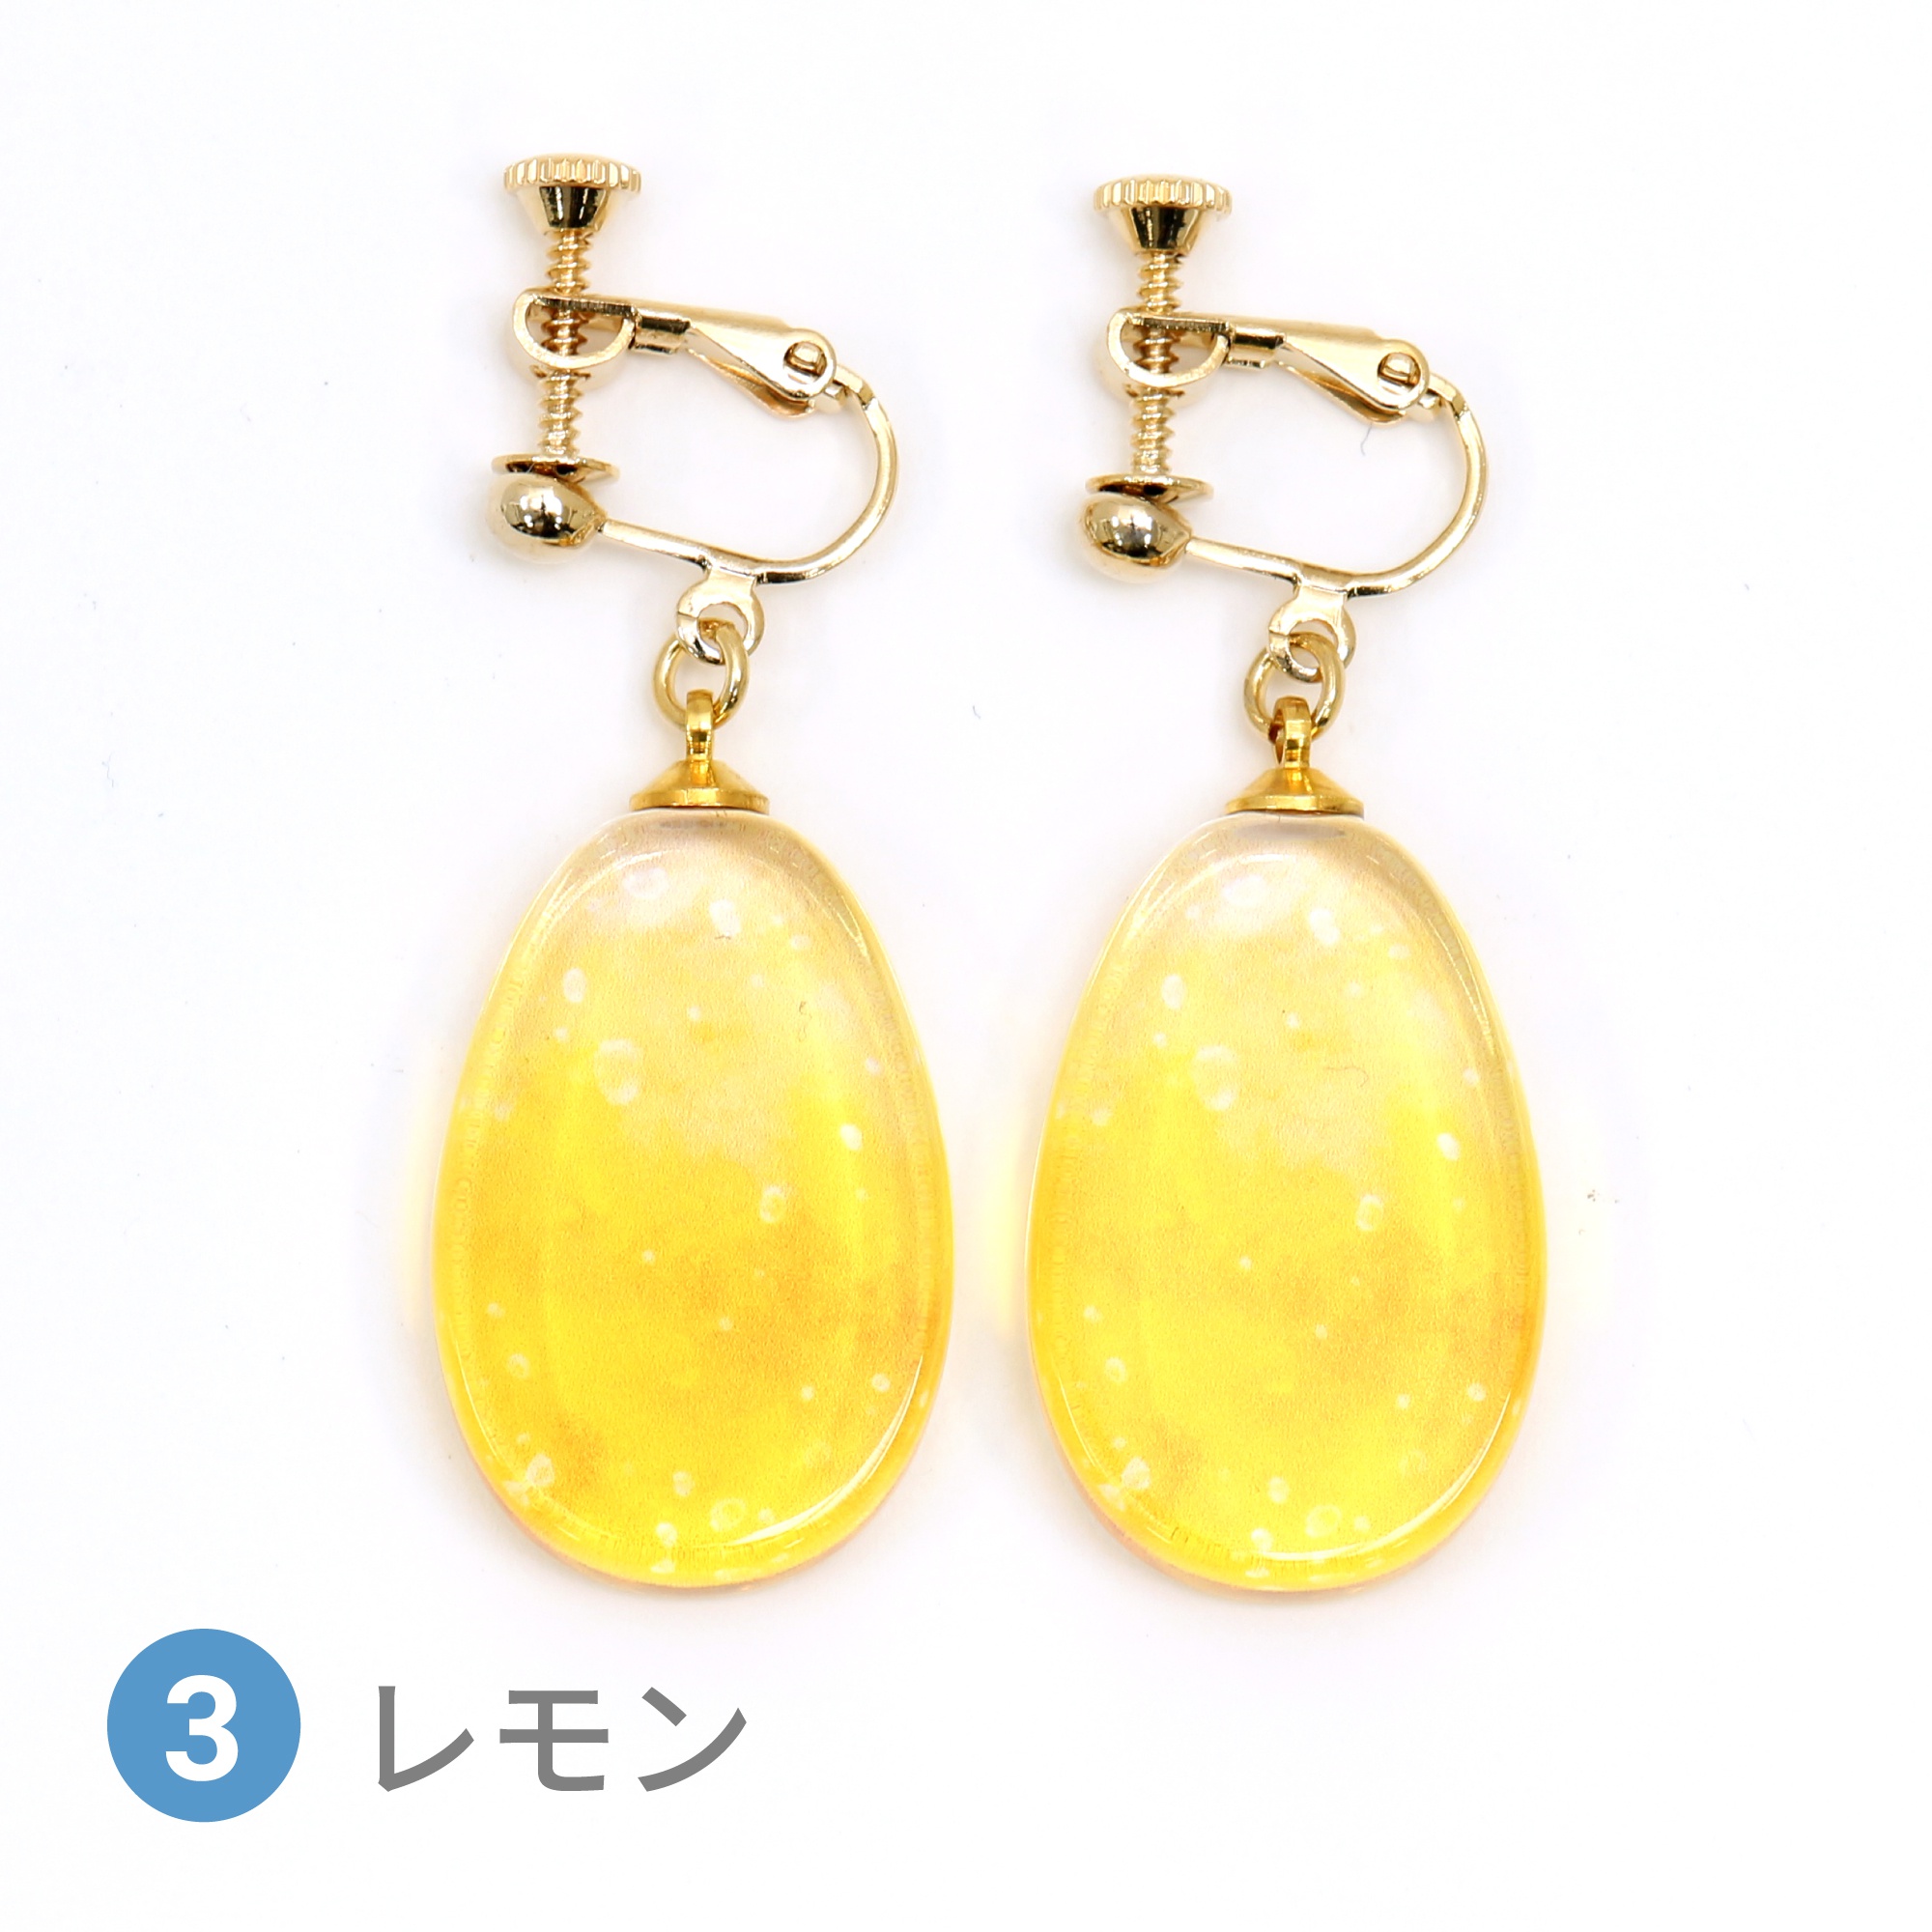 Glass accessories Earring SODA lemon drop shape